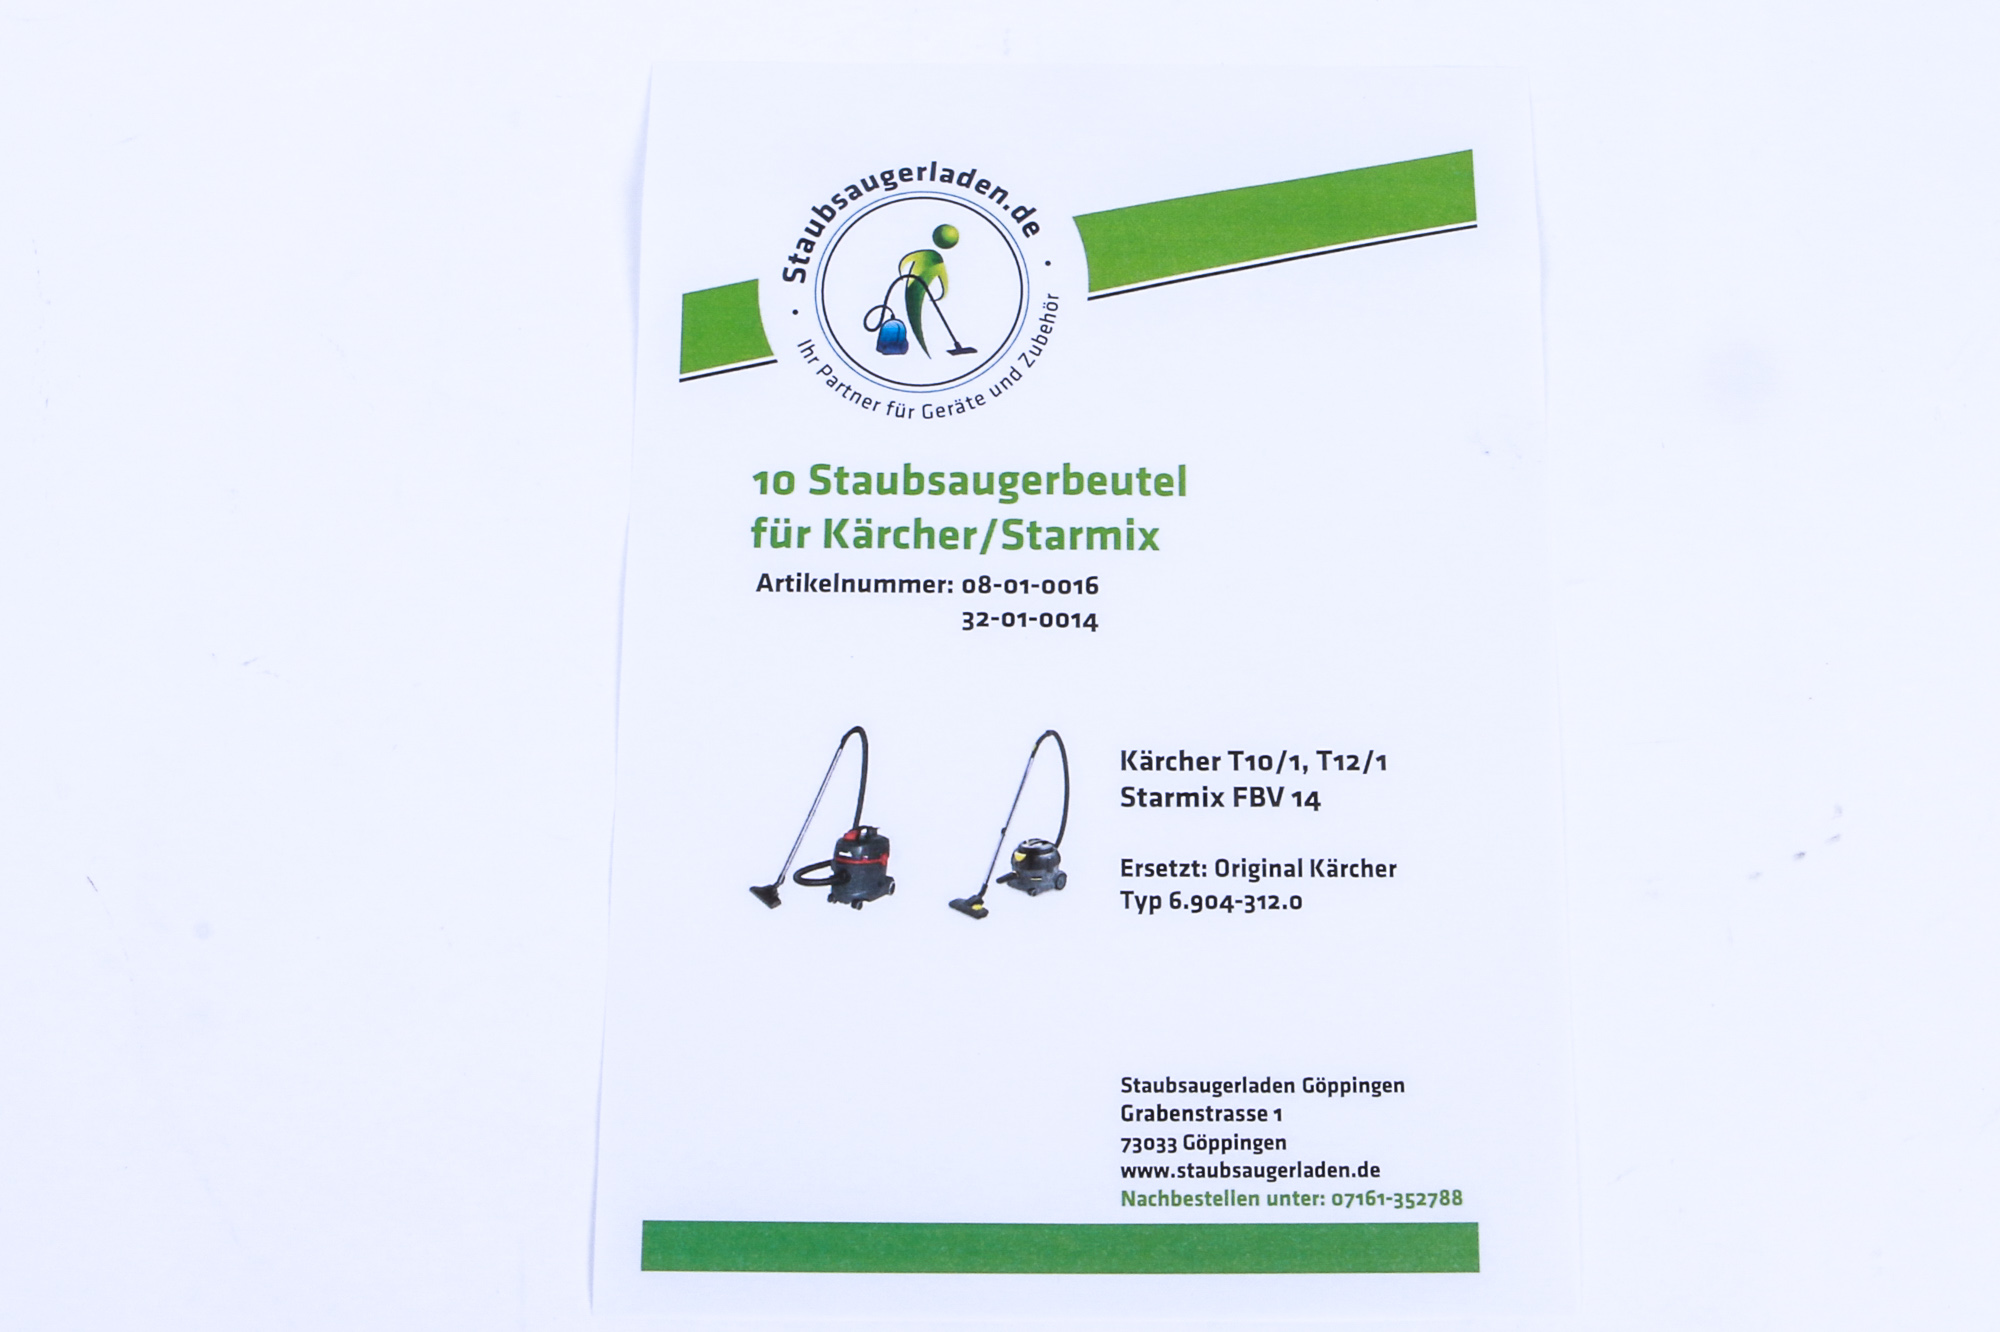 STAUBSAUGERLADEN.DE 10 Staubbeutel passend für Staubsaugerbeutel T 12/1 und Kärcher 14 FBV Starmix